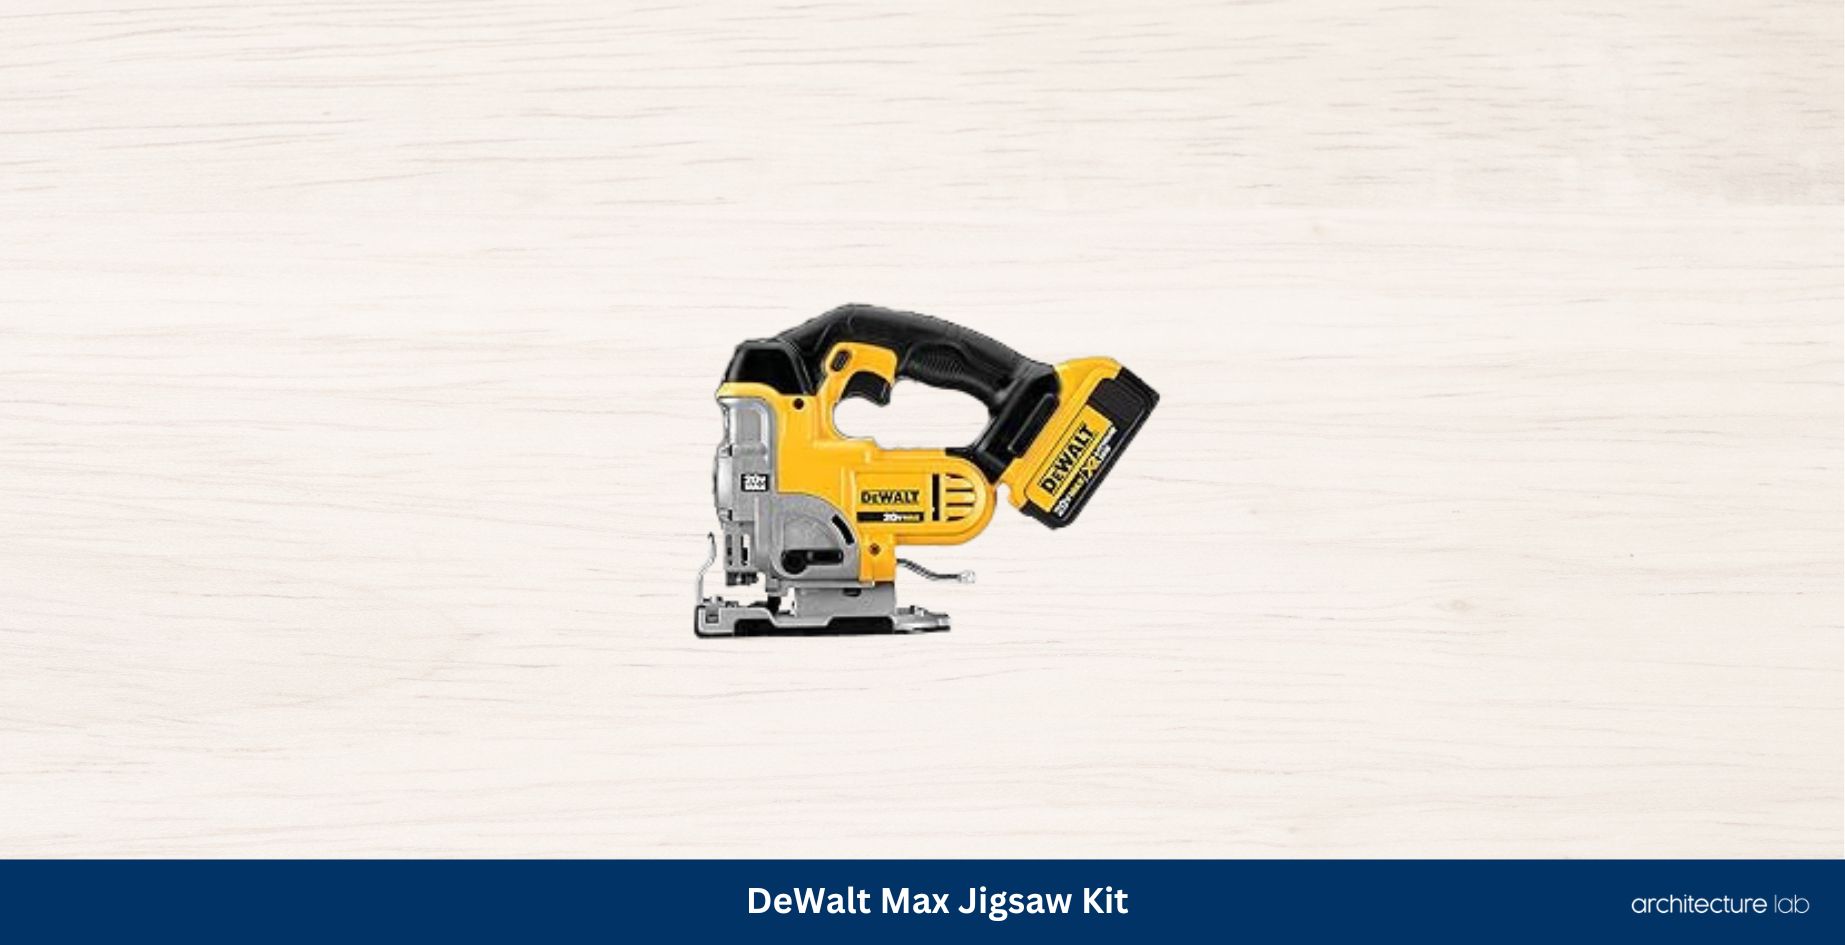 Dewalt dcs331m1 20v max jigsaw kit